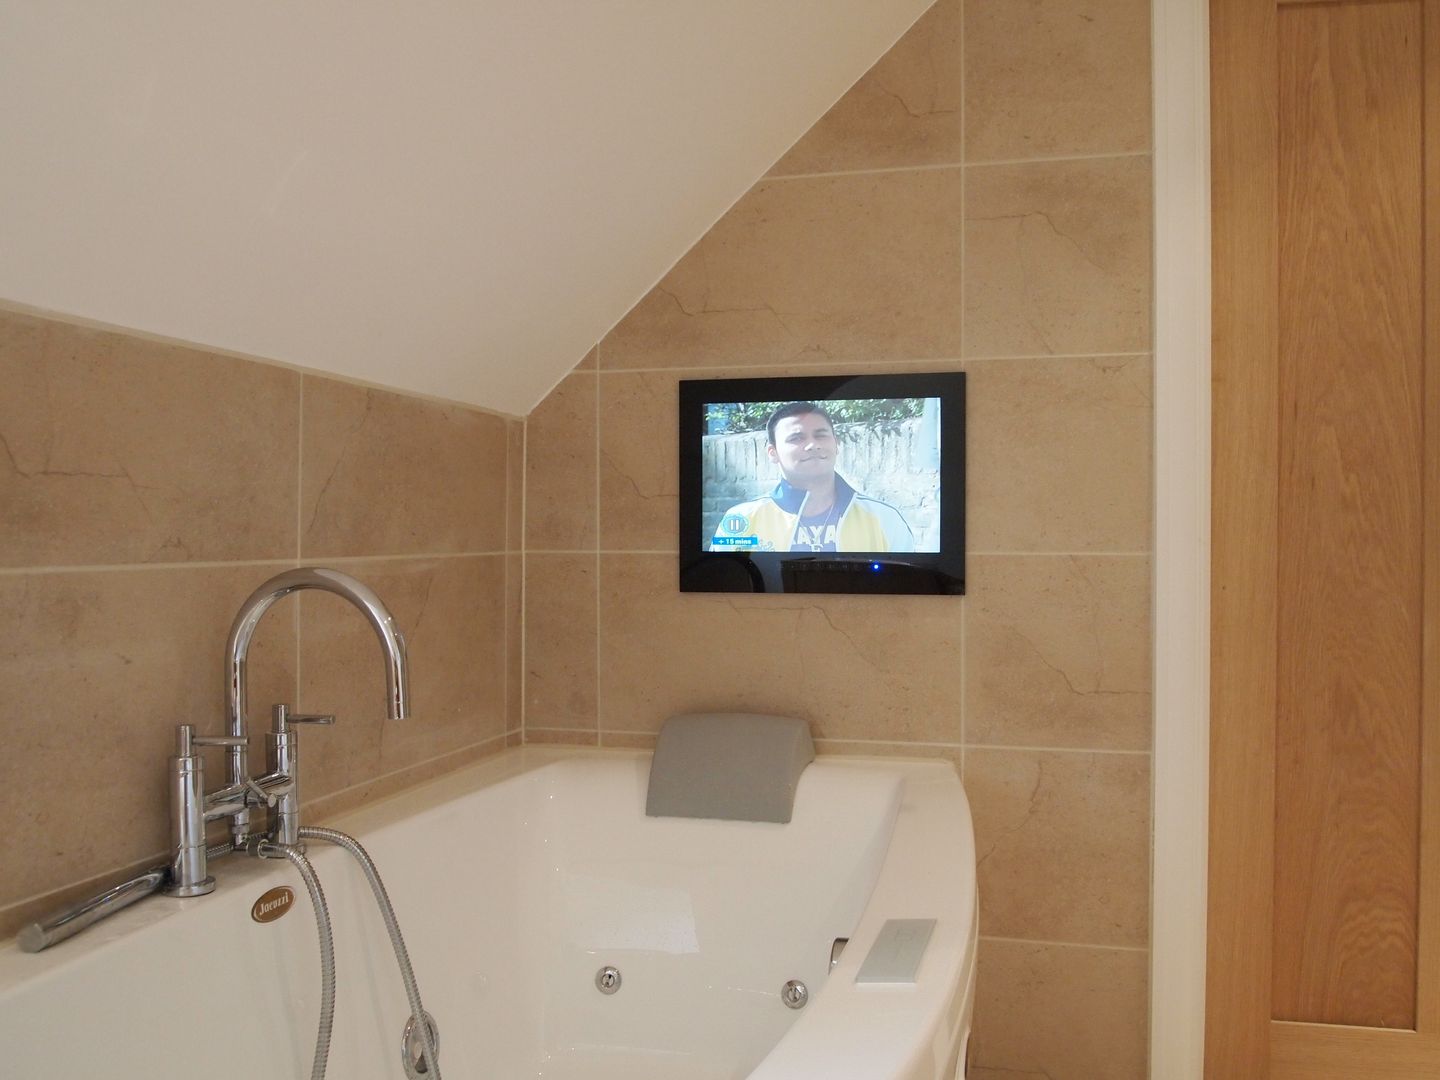 Bathroom Mirror TV Designer Vision and Sound 모던스타일 욕실